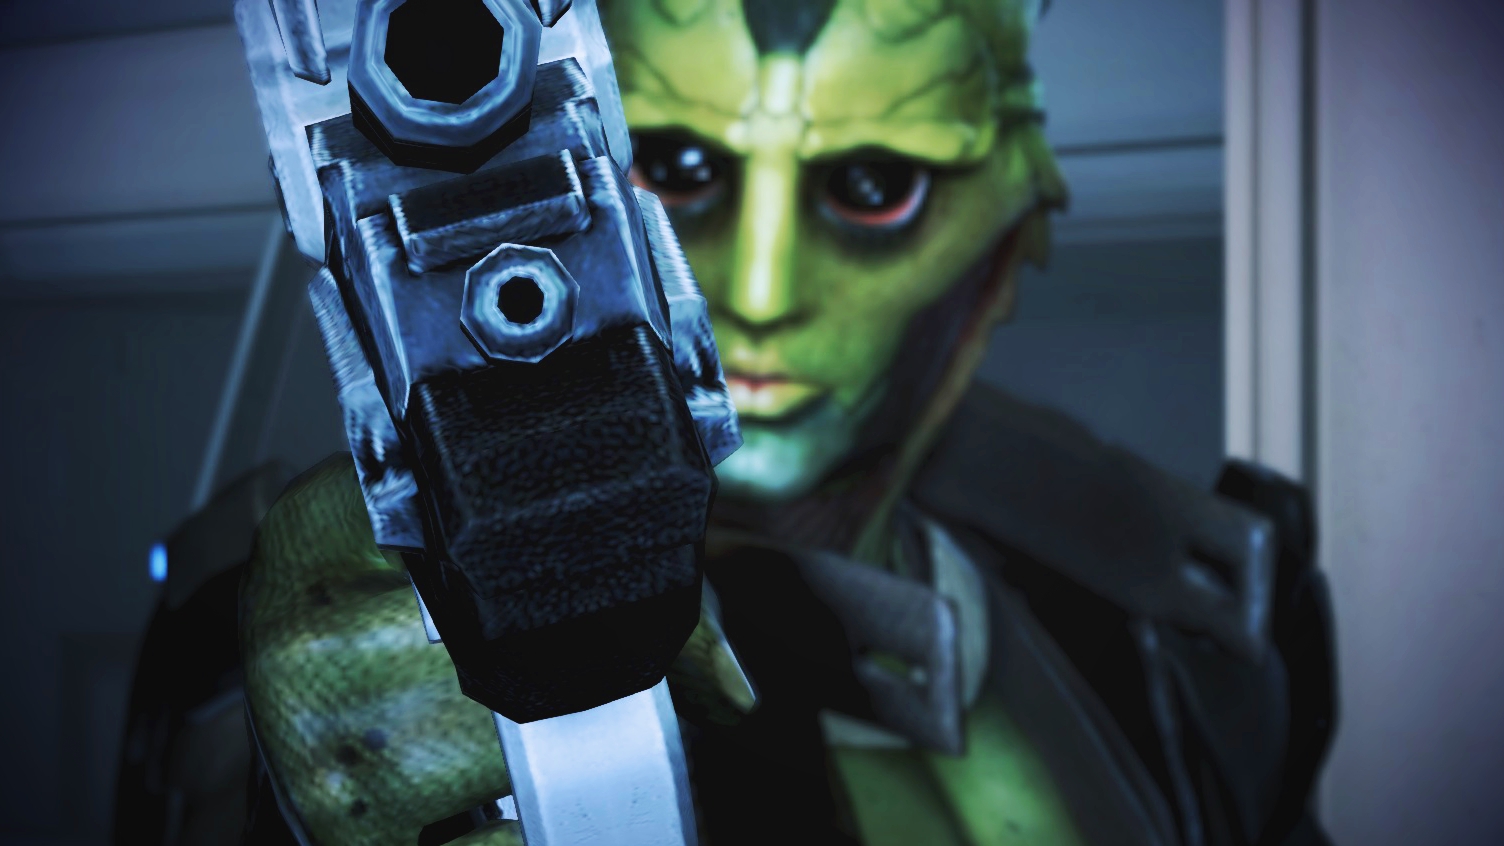 Descarga gratis la imagen Mass Effect, Videojuego, Thane Krios en el escritorio de tu PC